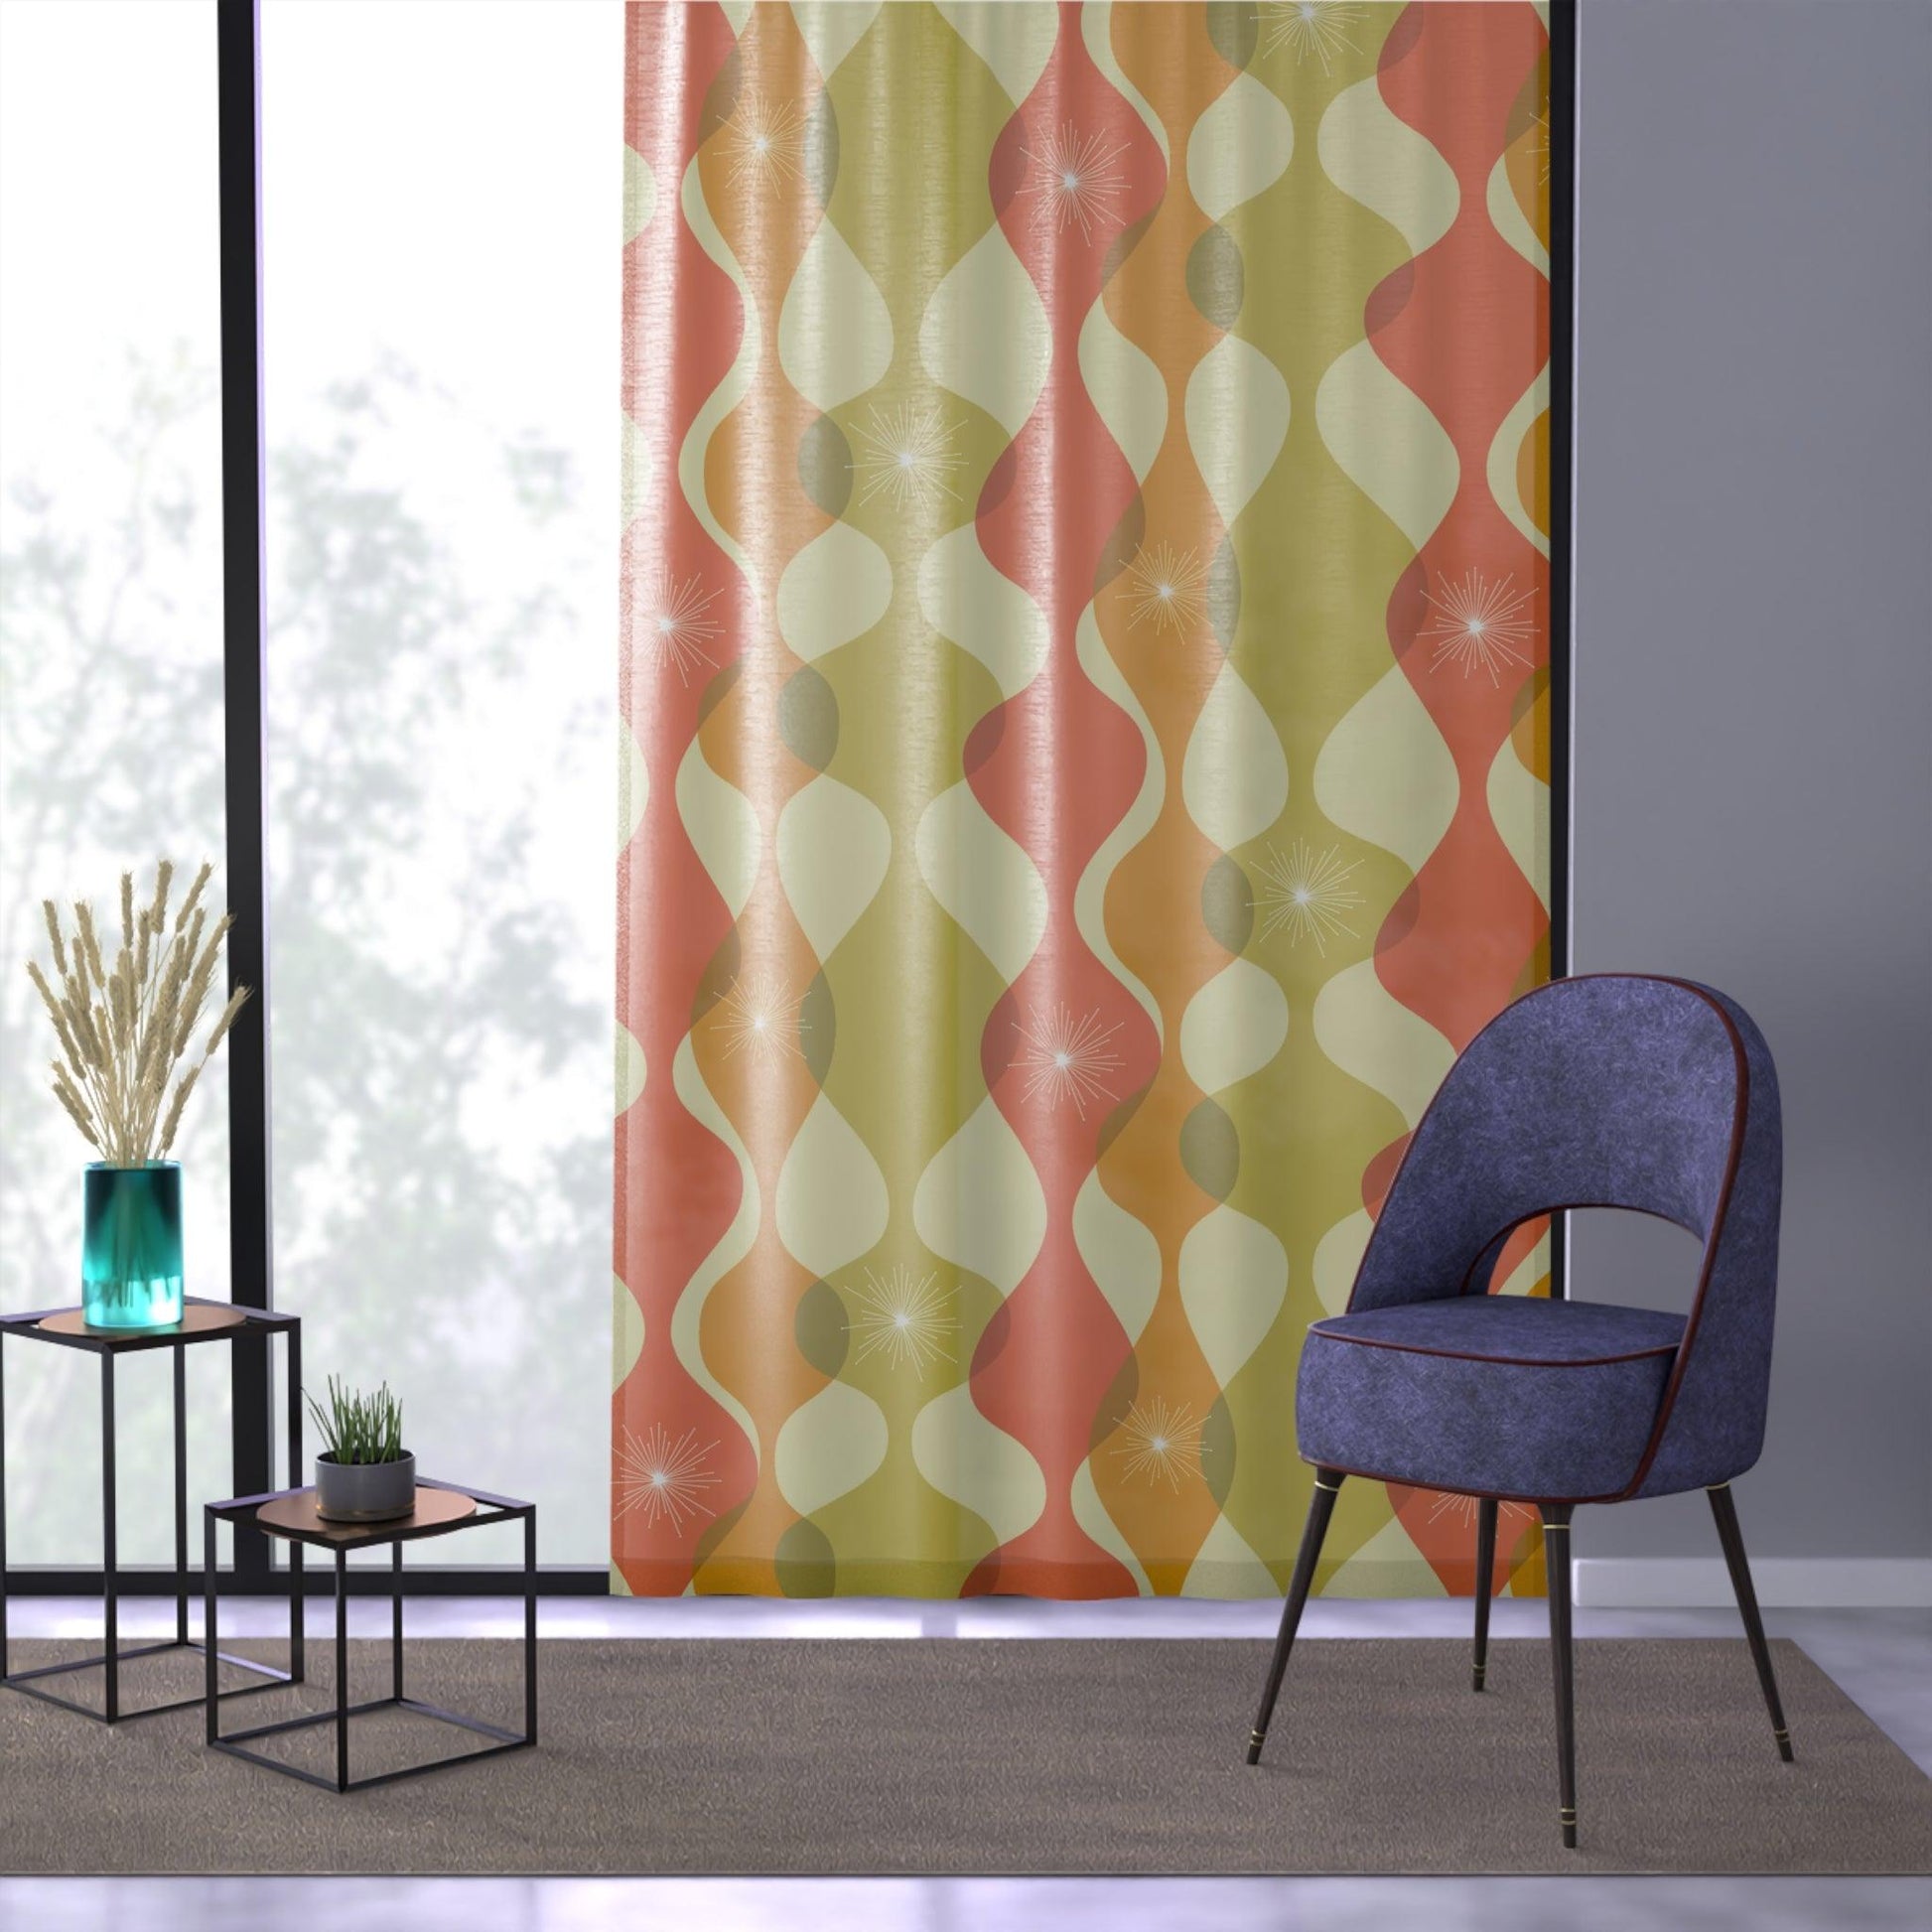 Mid Century Mod Wavy Abstract Orange, Green & Yellow Sheer Window Curtain | lovevisionkarma.com